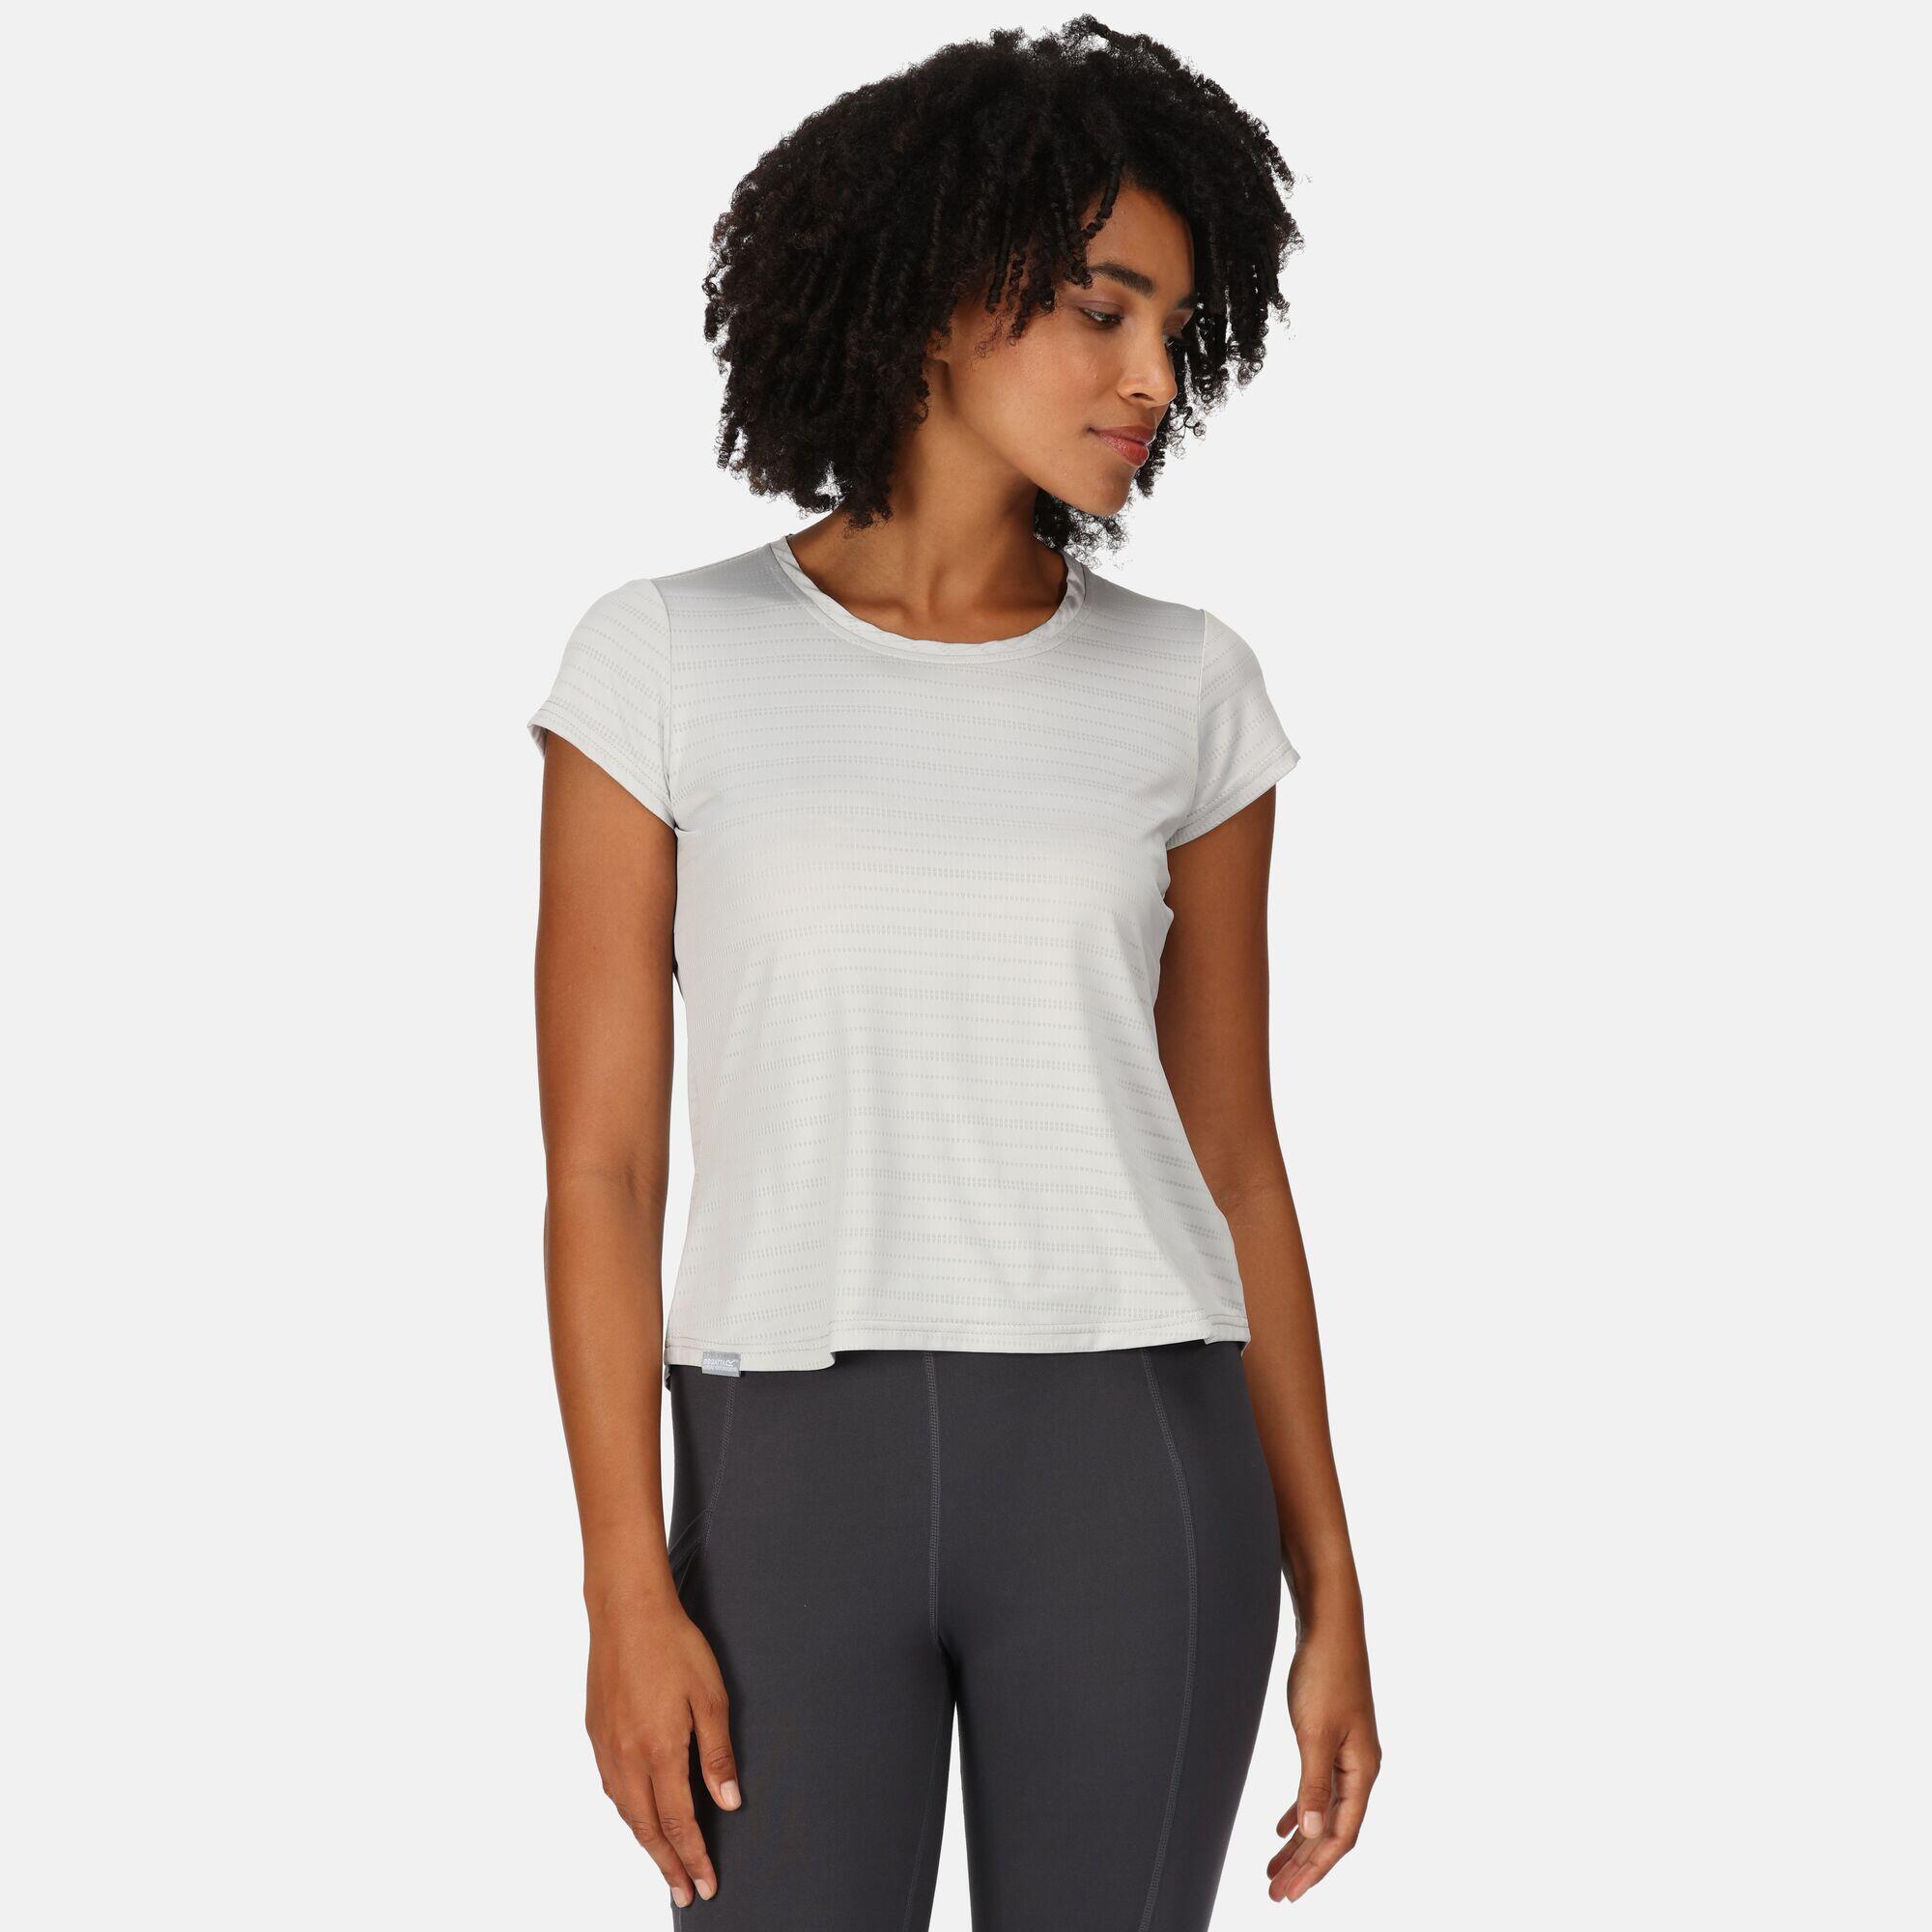 Limonite VI Women's Fitness Short Sleeve T-Shirt 1/7